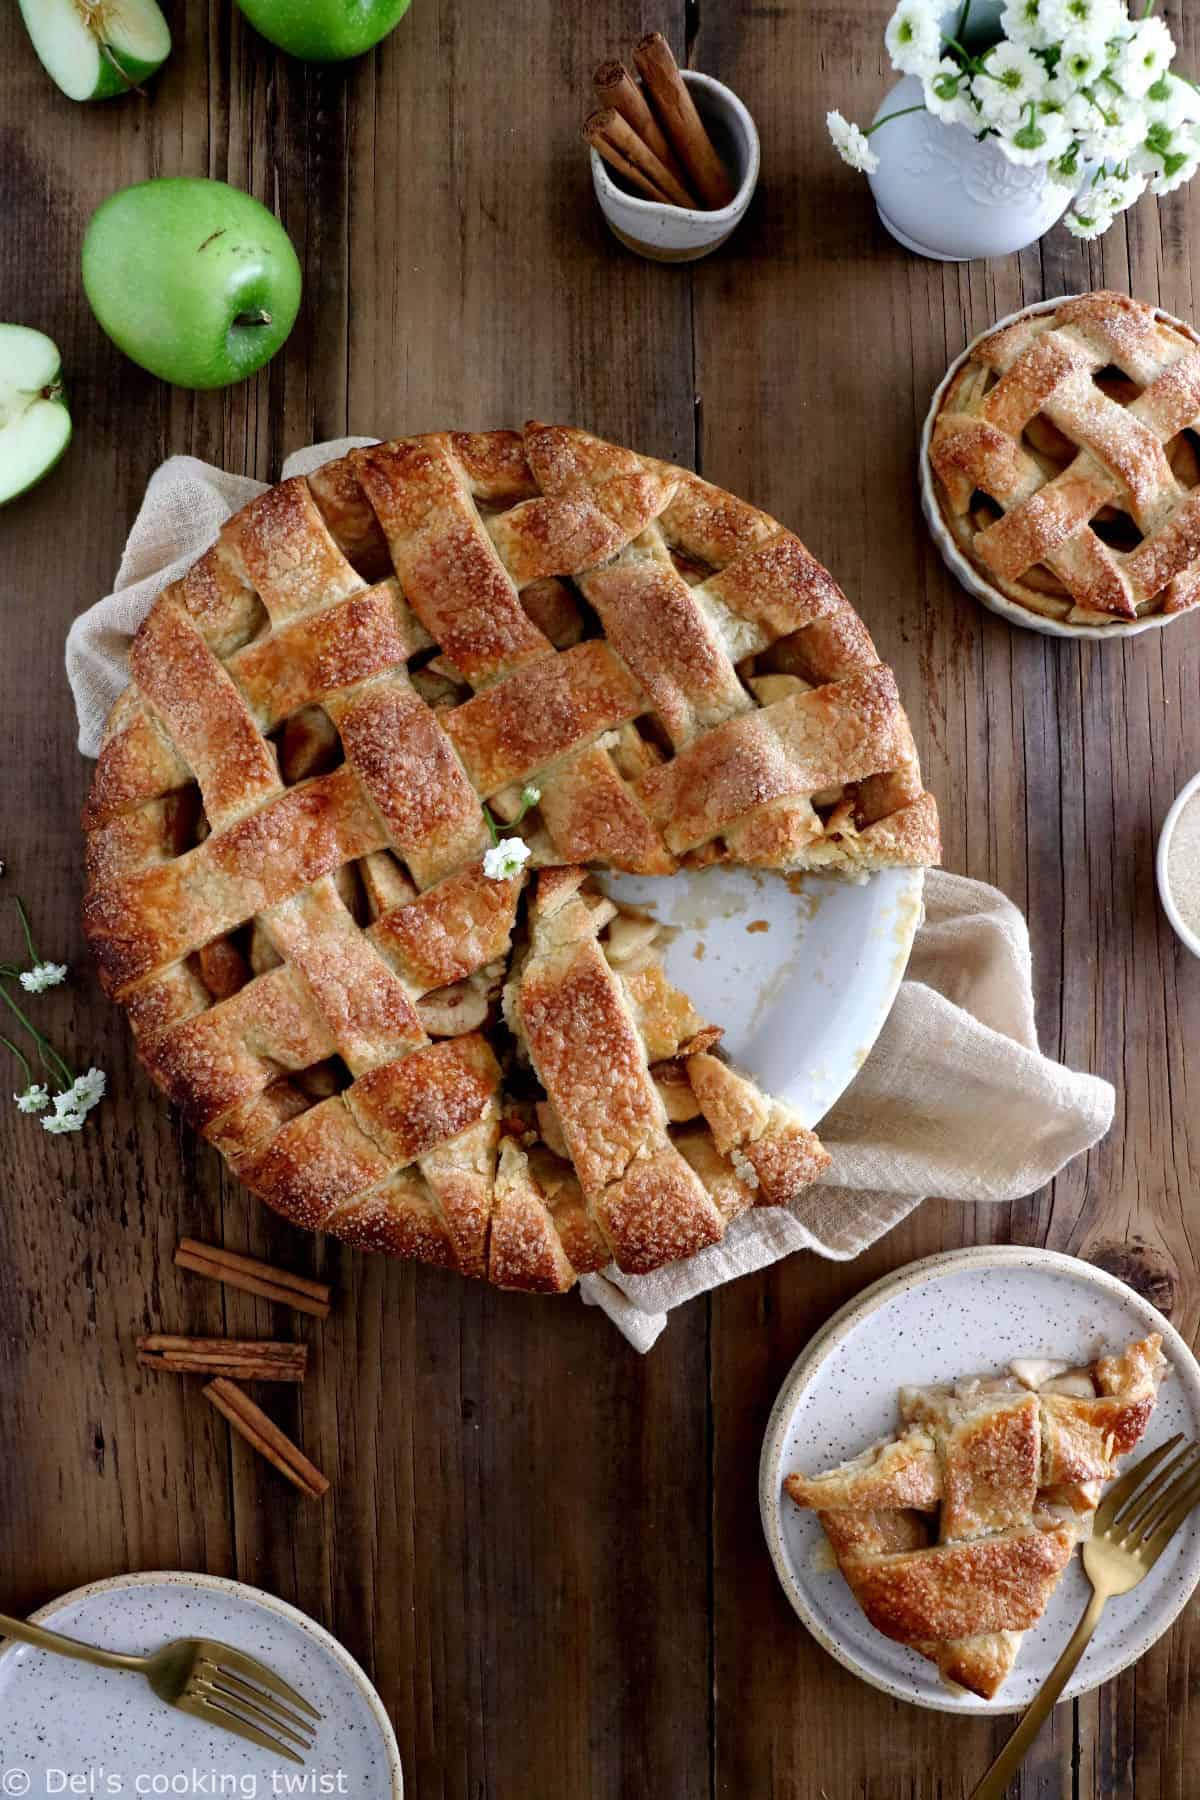 La recette de la vraie American Apple Pie, avec un joli quadrillage recouvrant une généreuse couche de pommes délicieusement épicées.